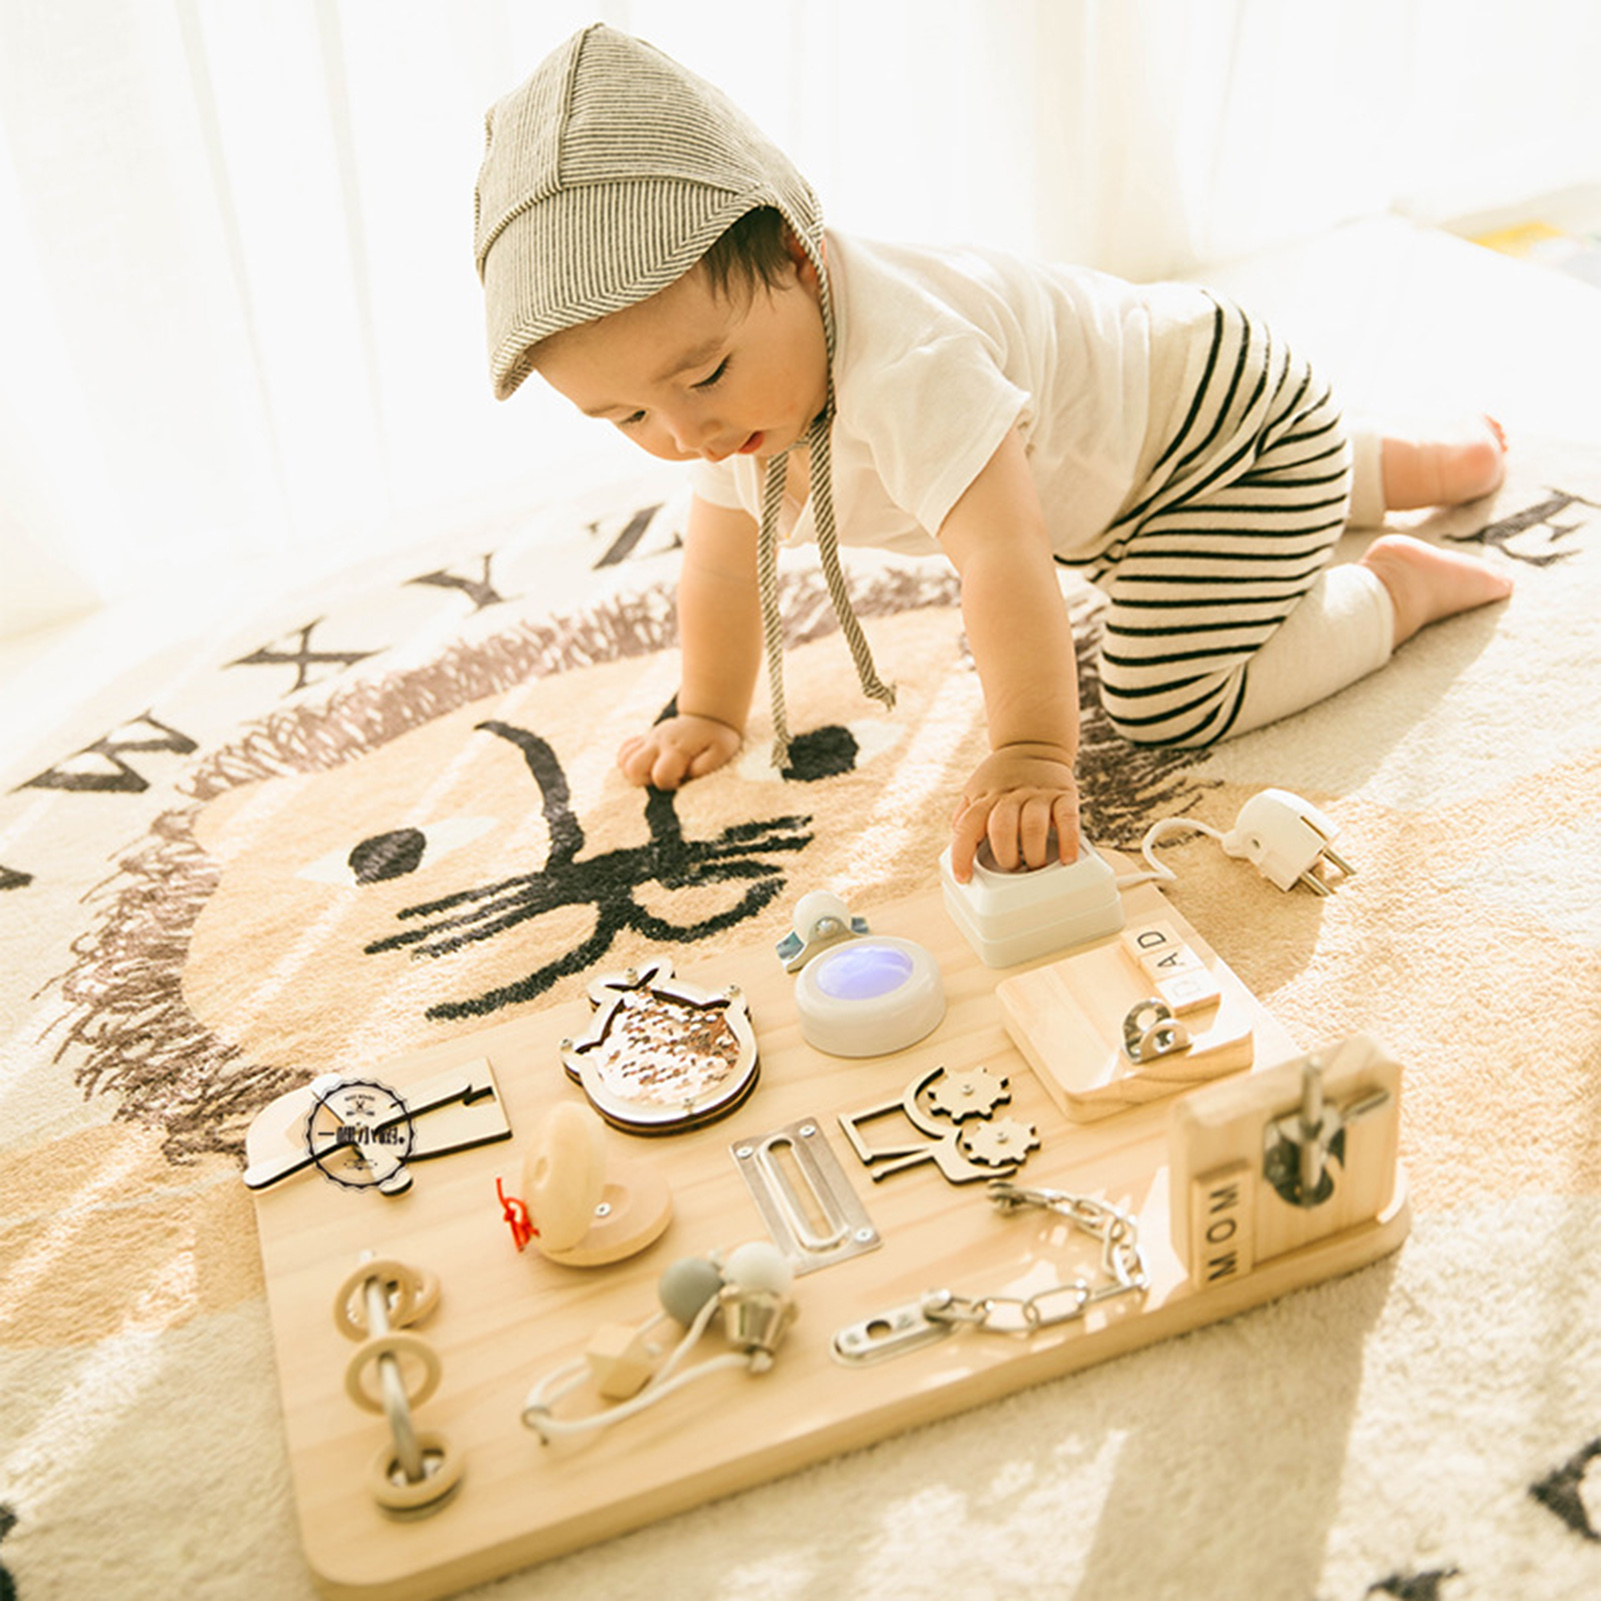 Planche d'Activité Montessori (Busy Board Bébé) : Comment la Choisir ?